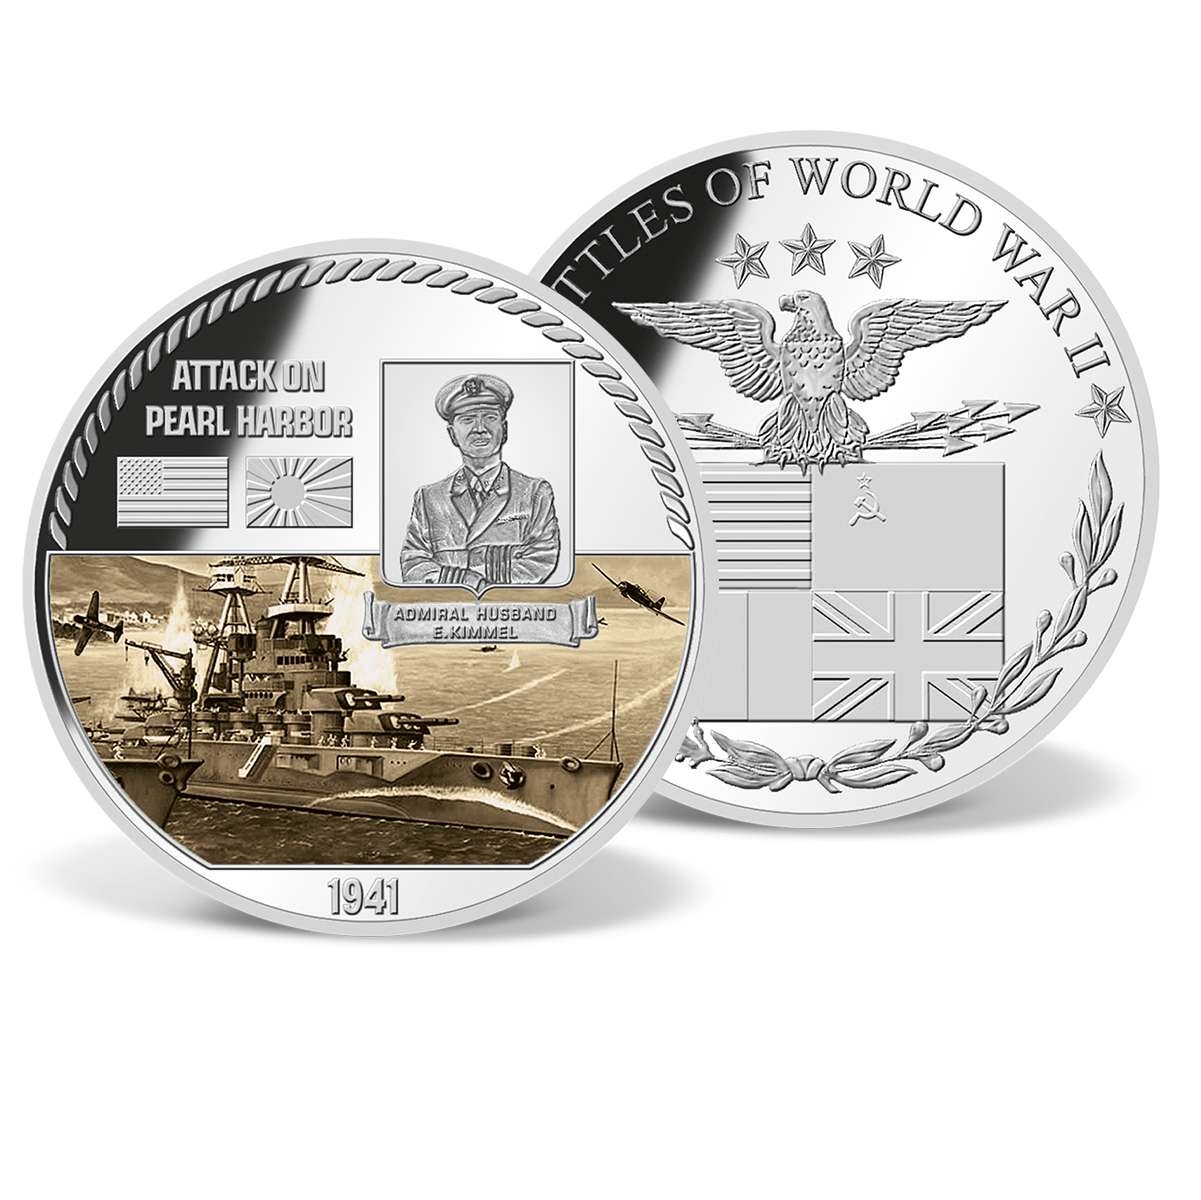 Attack on Pearl Harbor Commemorative Color Coin